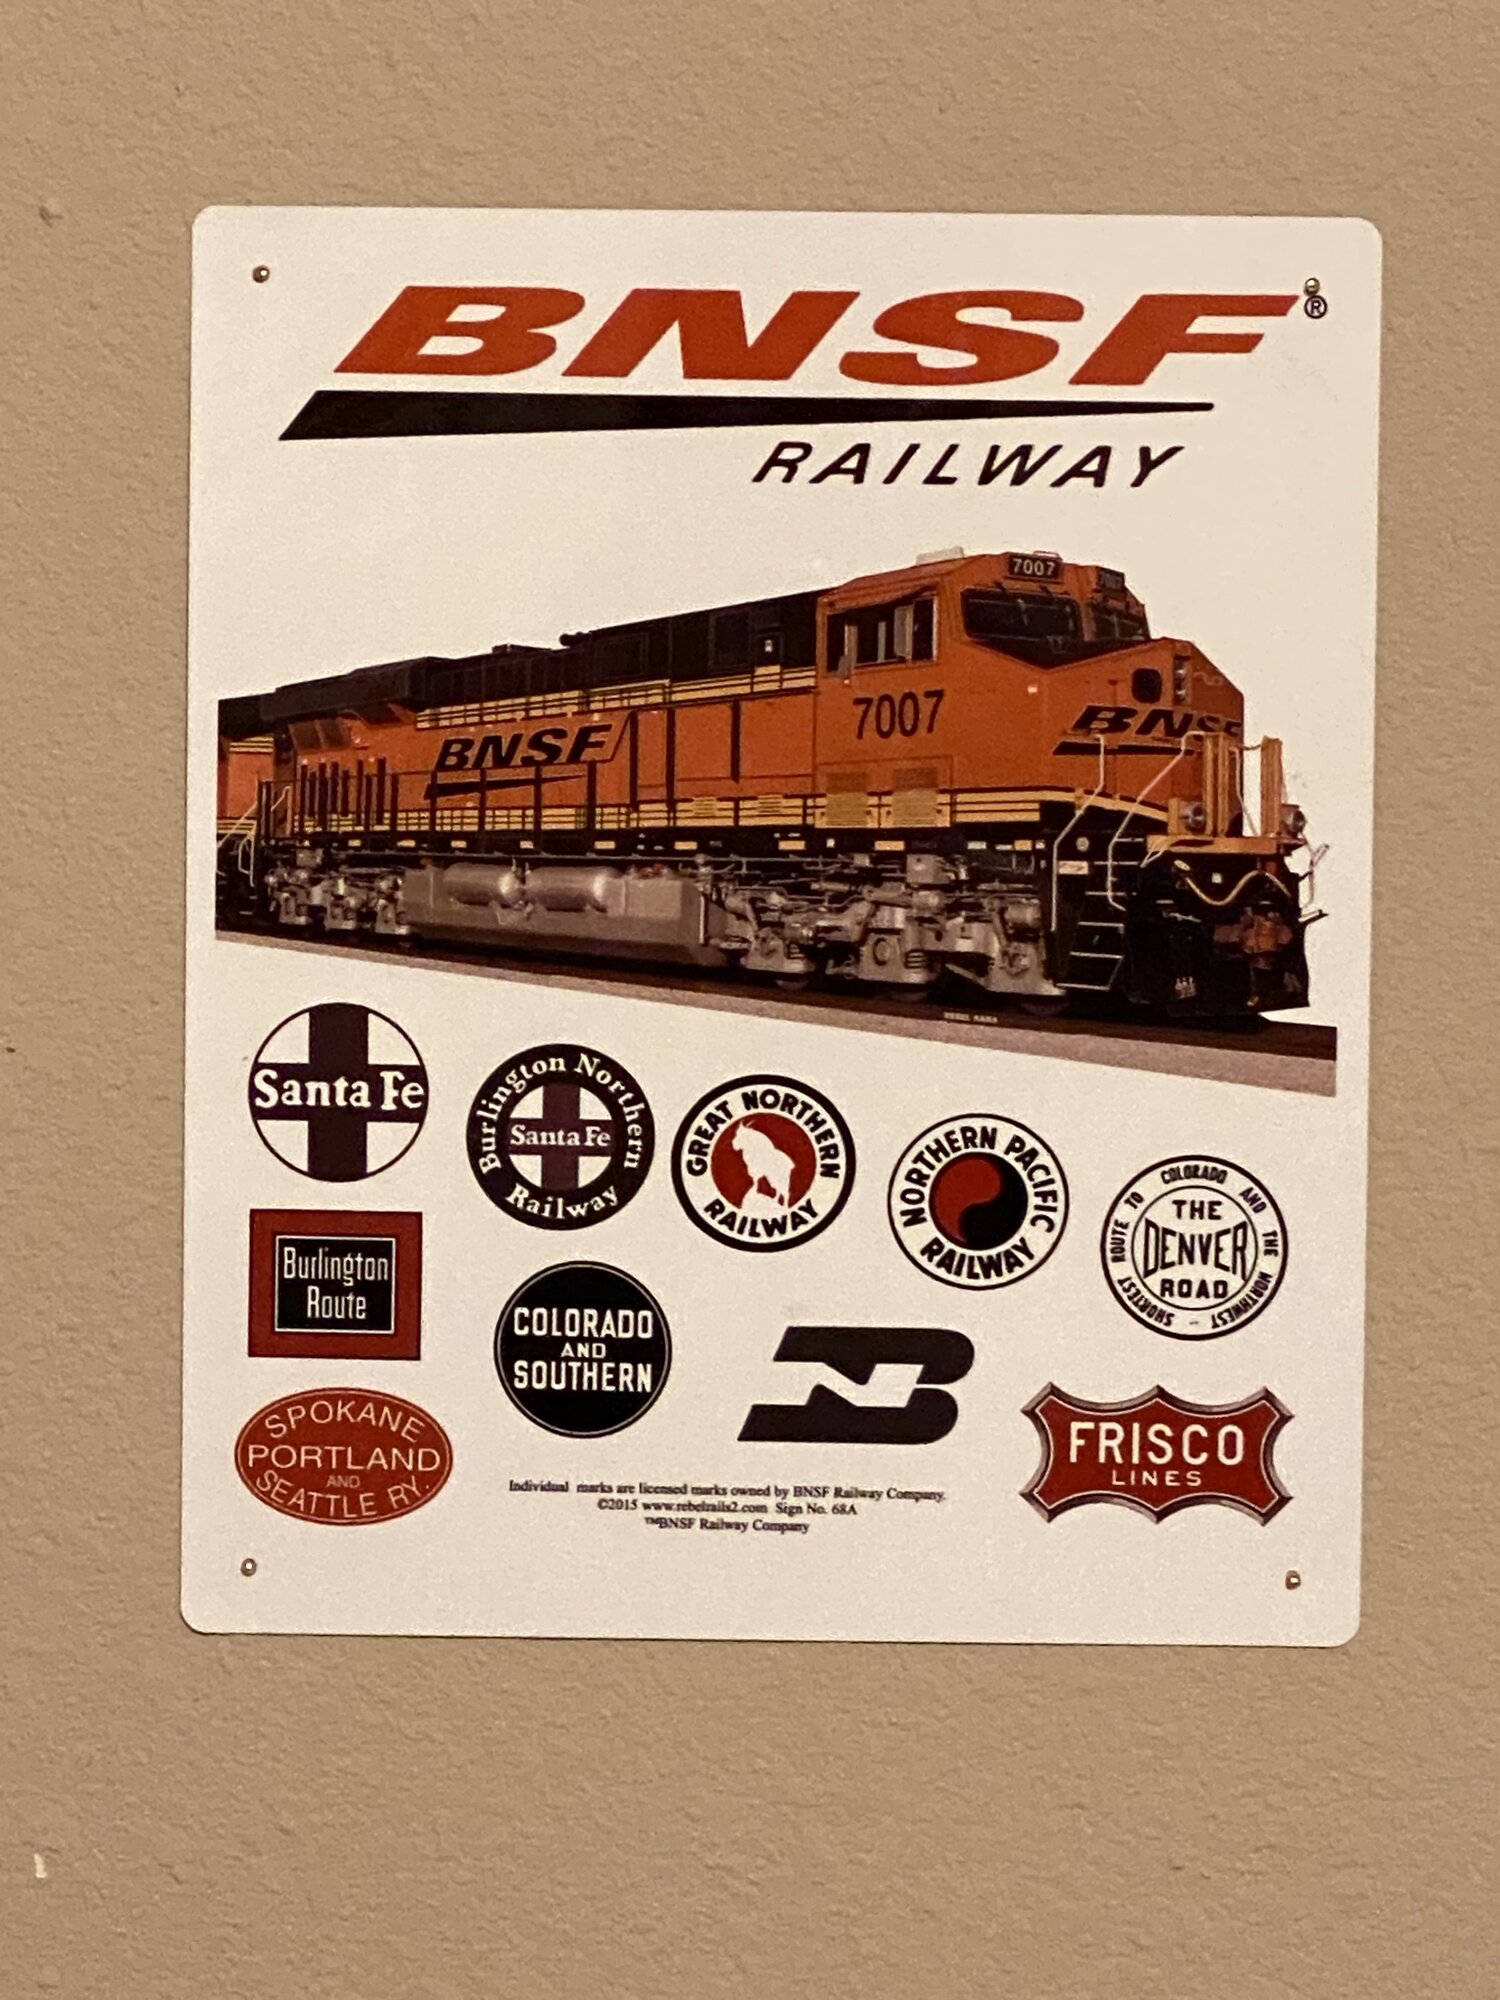 BNSF Heritage.jpg